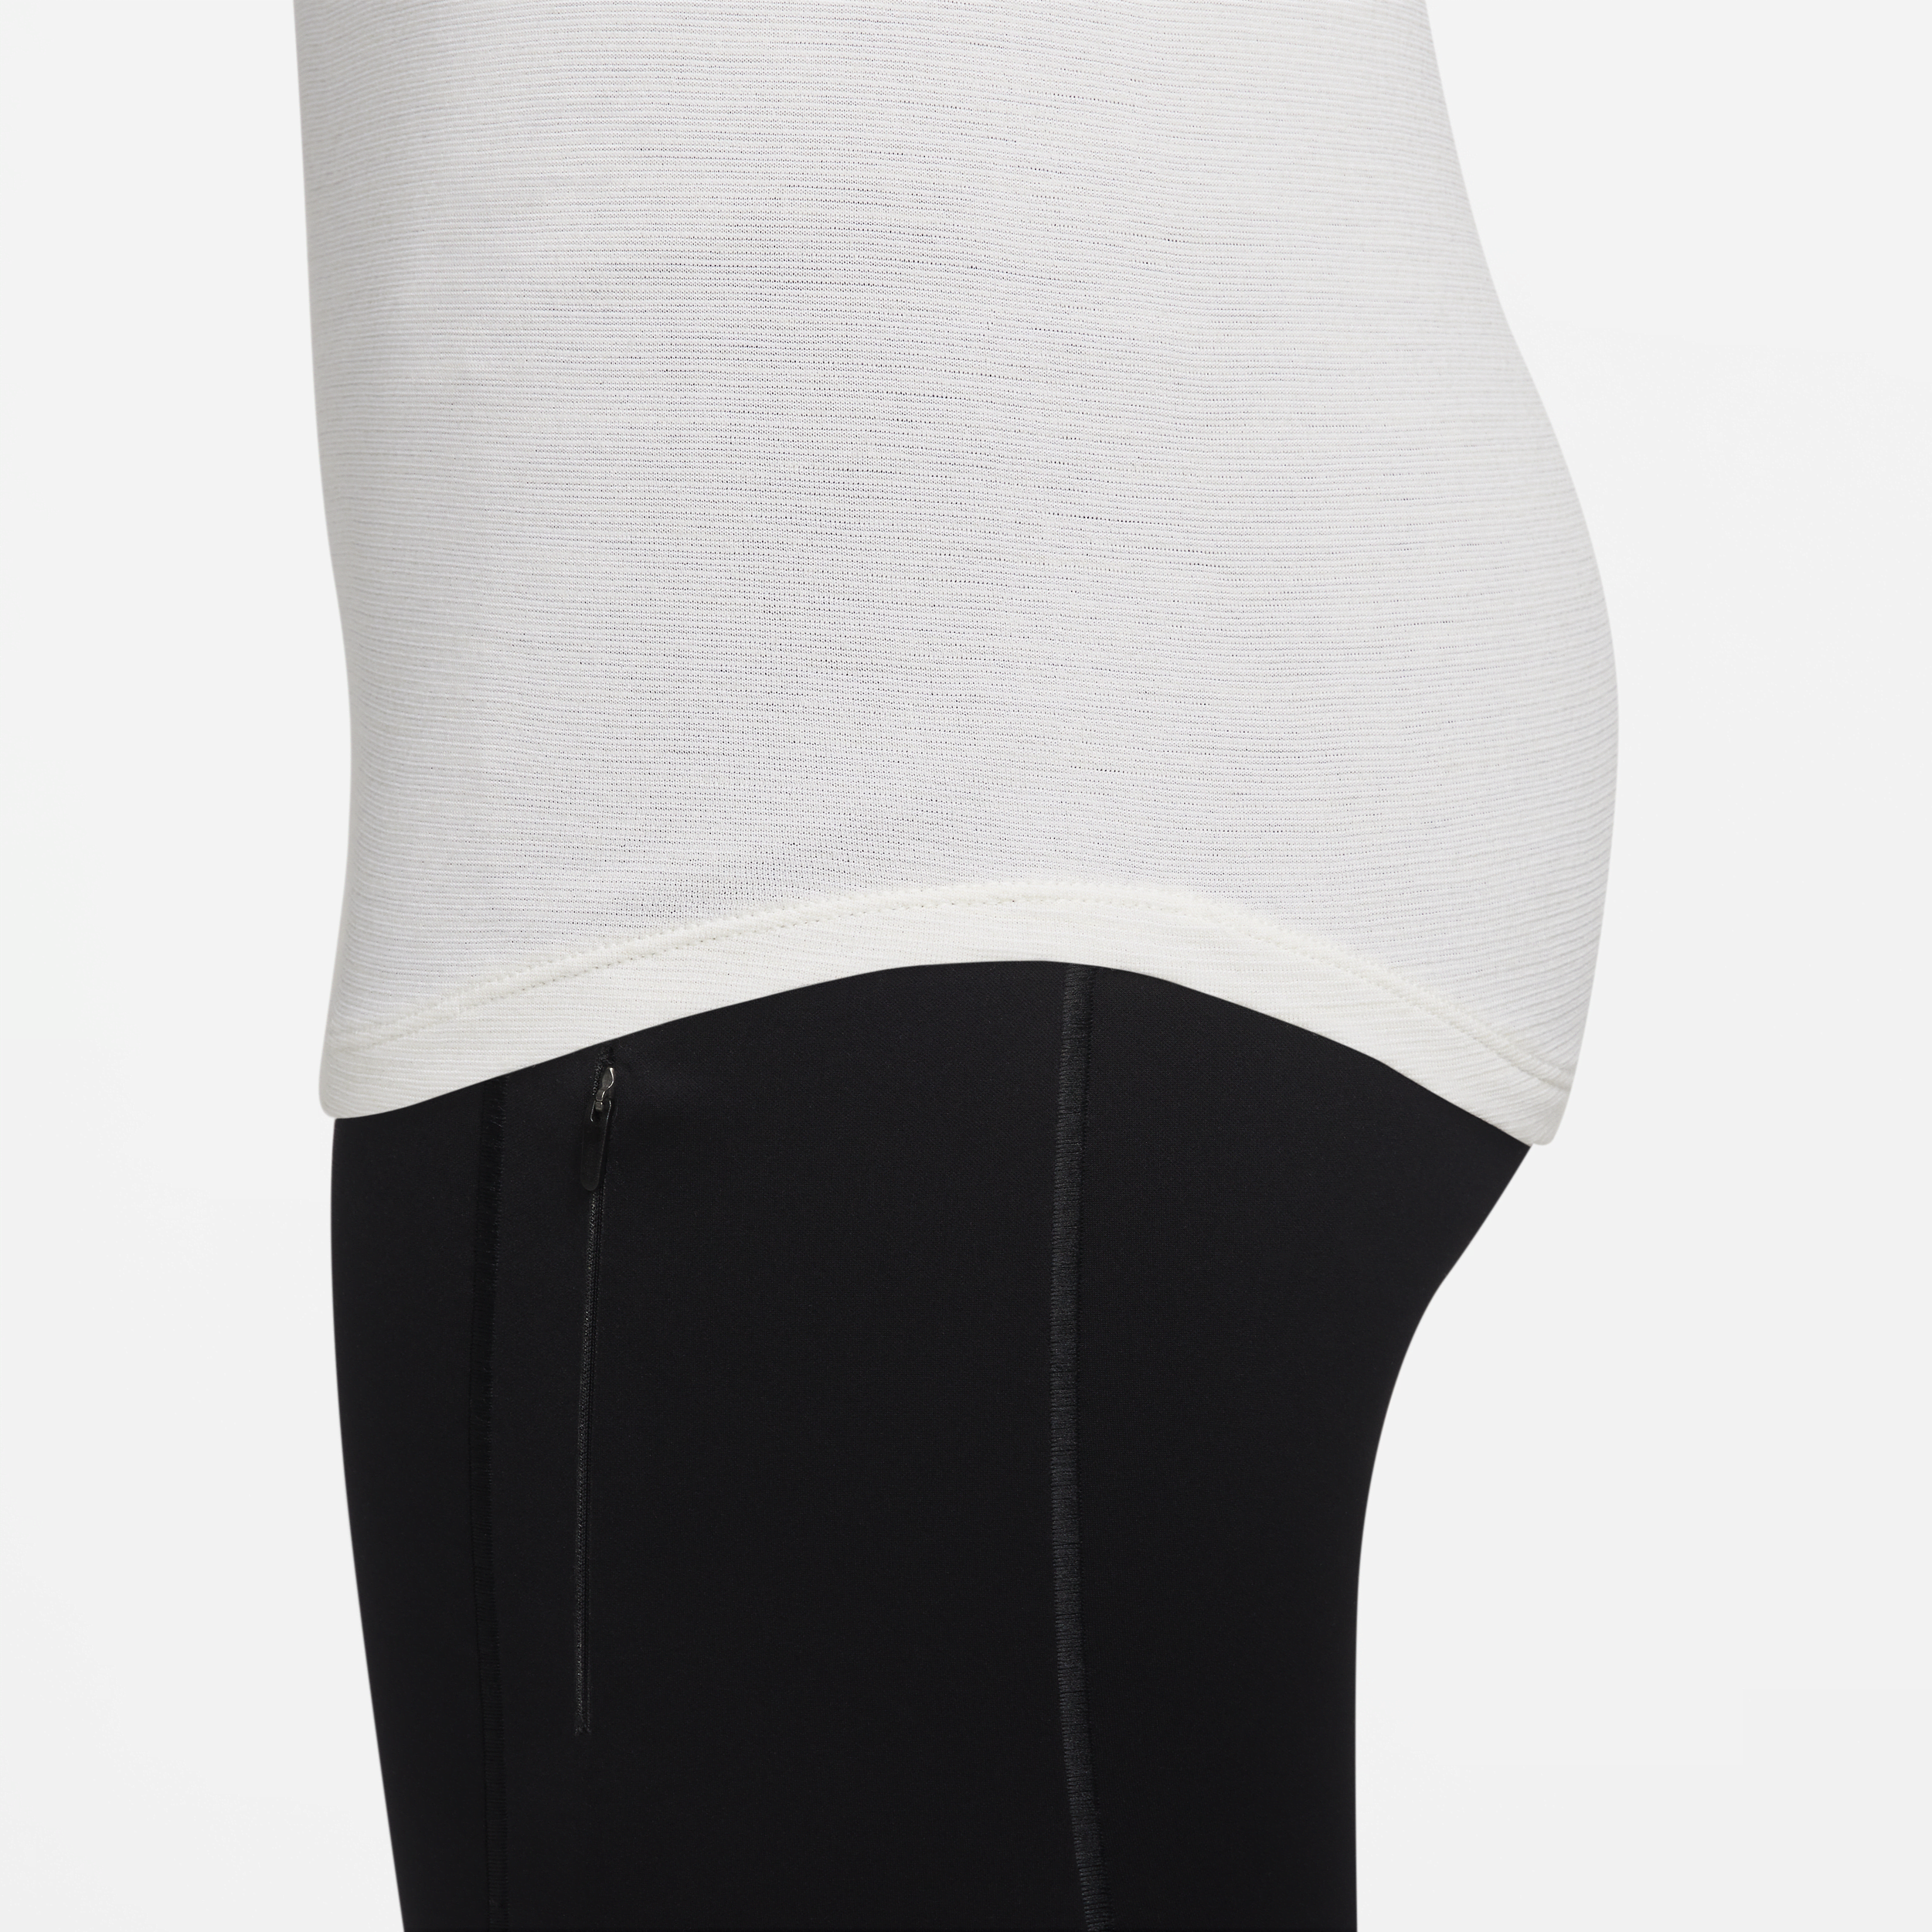 Nike Swift Wool Dri-FIT hardlooptop met korte mouwen voor dames Wit